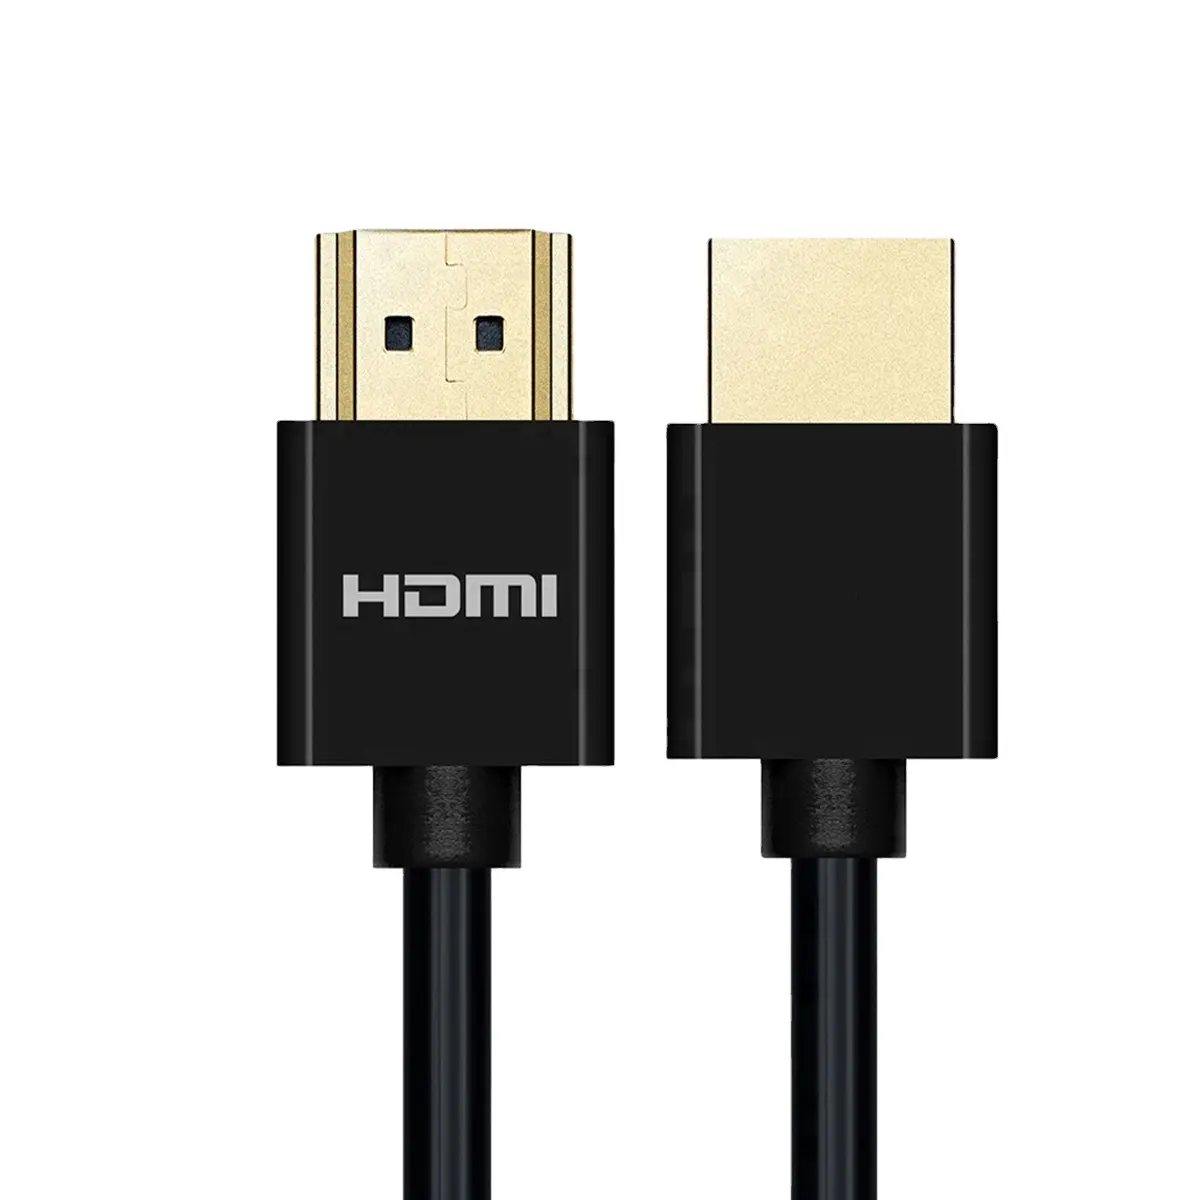 Сертифицированный новейший 1 м Hdmi кабель с поддержкой Hdmi Mtrix Switch, Ультра высокоскоростной 48 Гбит/с, 7680p, 8K, 60 Гц, 4K, 120 Гц, HDMI-кабель